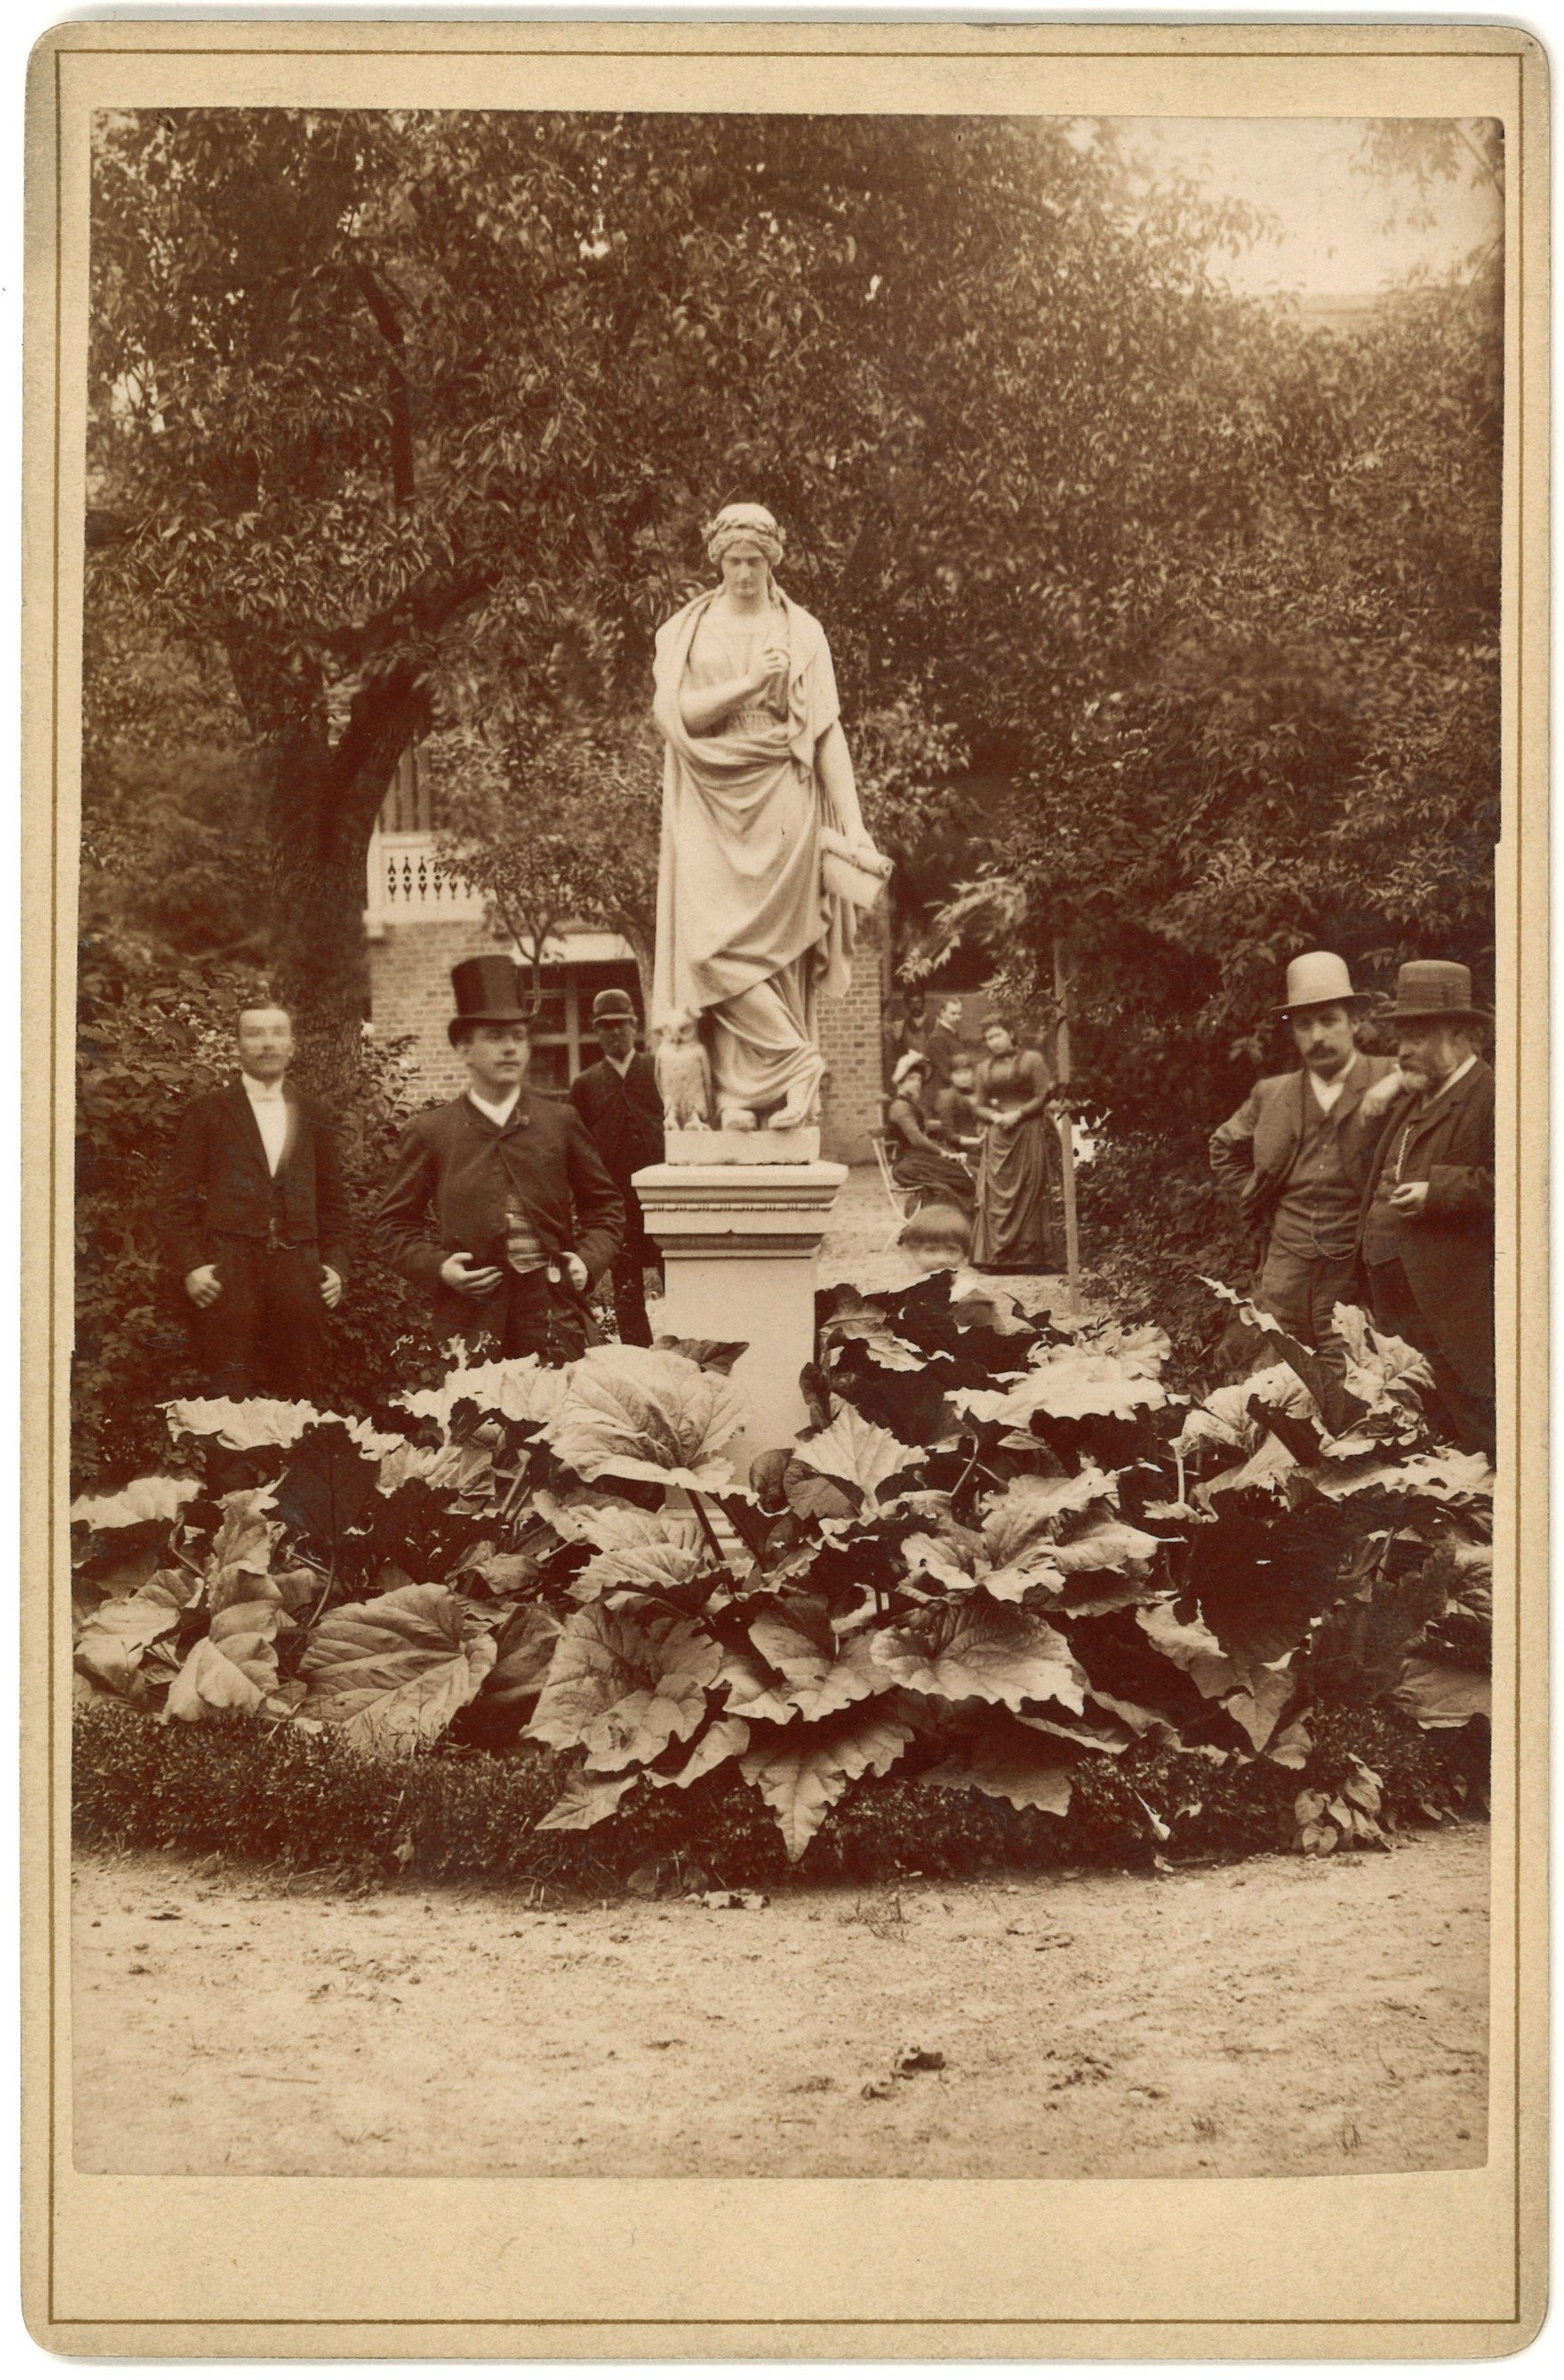 Friedeberg (Neumark) [Strzelce Krajeńskie]: Minerva-Statue in einem Gartenlokal (Landesgeschichtliche Vereinigung für die Mark Brandenburg e.V., Archiv CC BY)